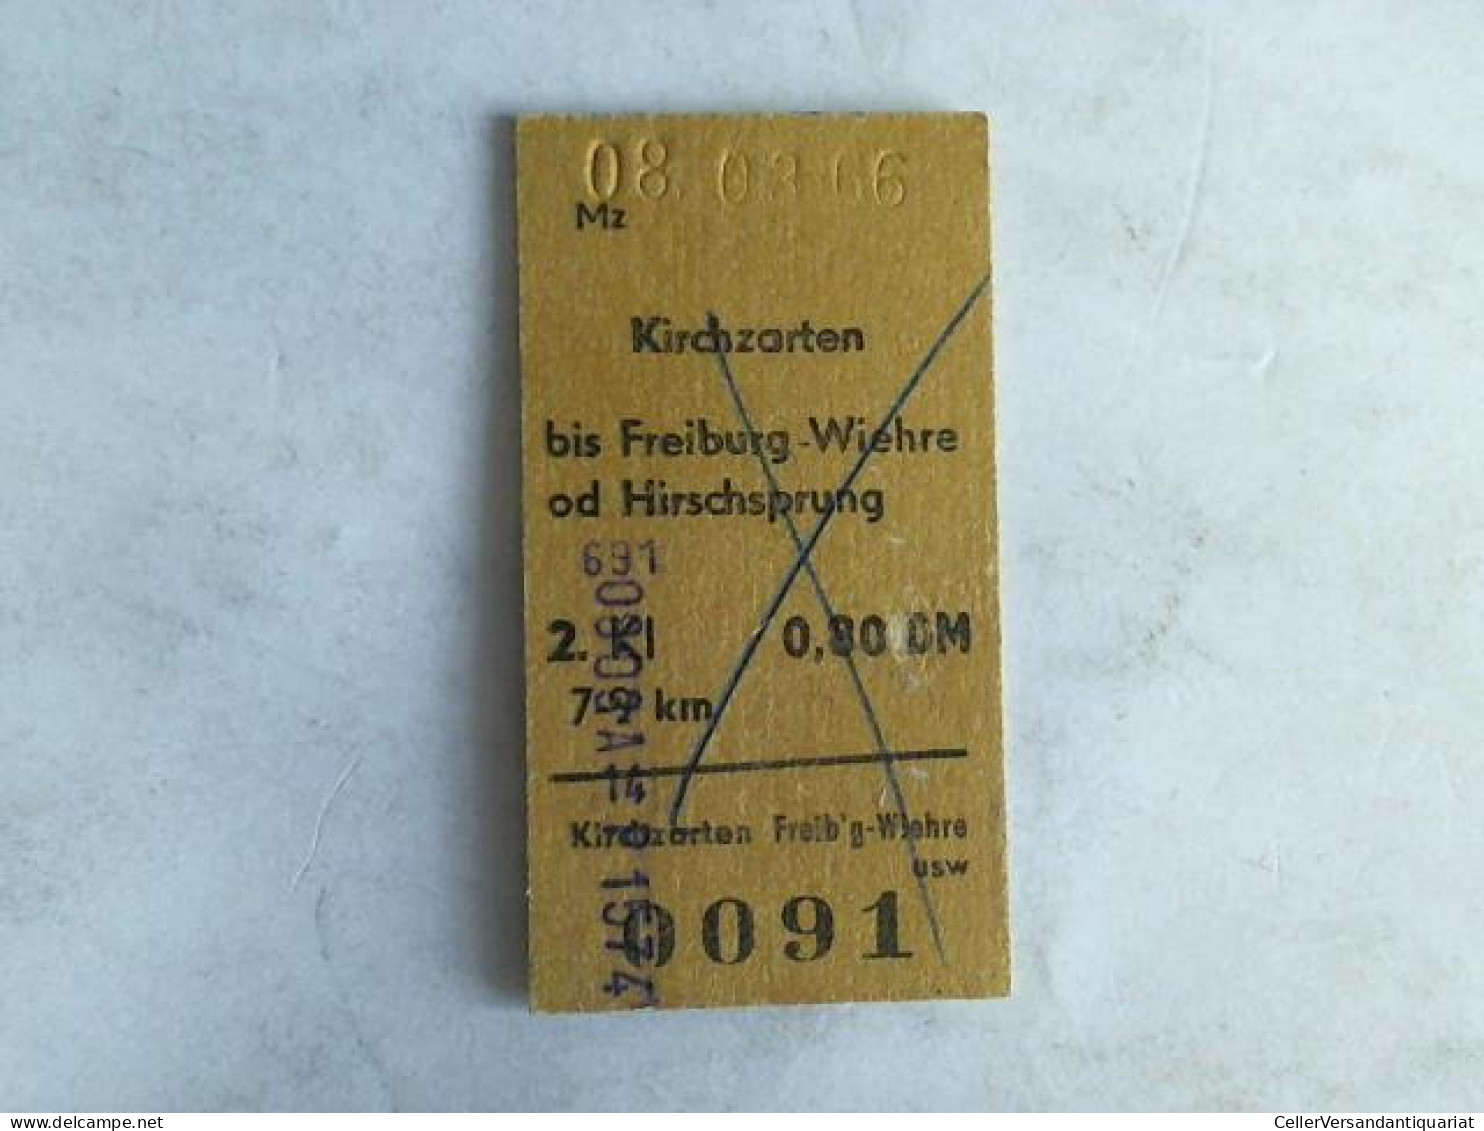 Fahrkarte Kirchzarten Bis Freiburg-Wiehre Od Hirschsprung. 2. Klasse Von (Eisenbahn-Fahrkarte) - Ohne Zuordnung